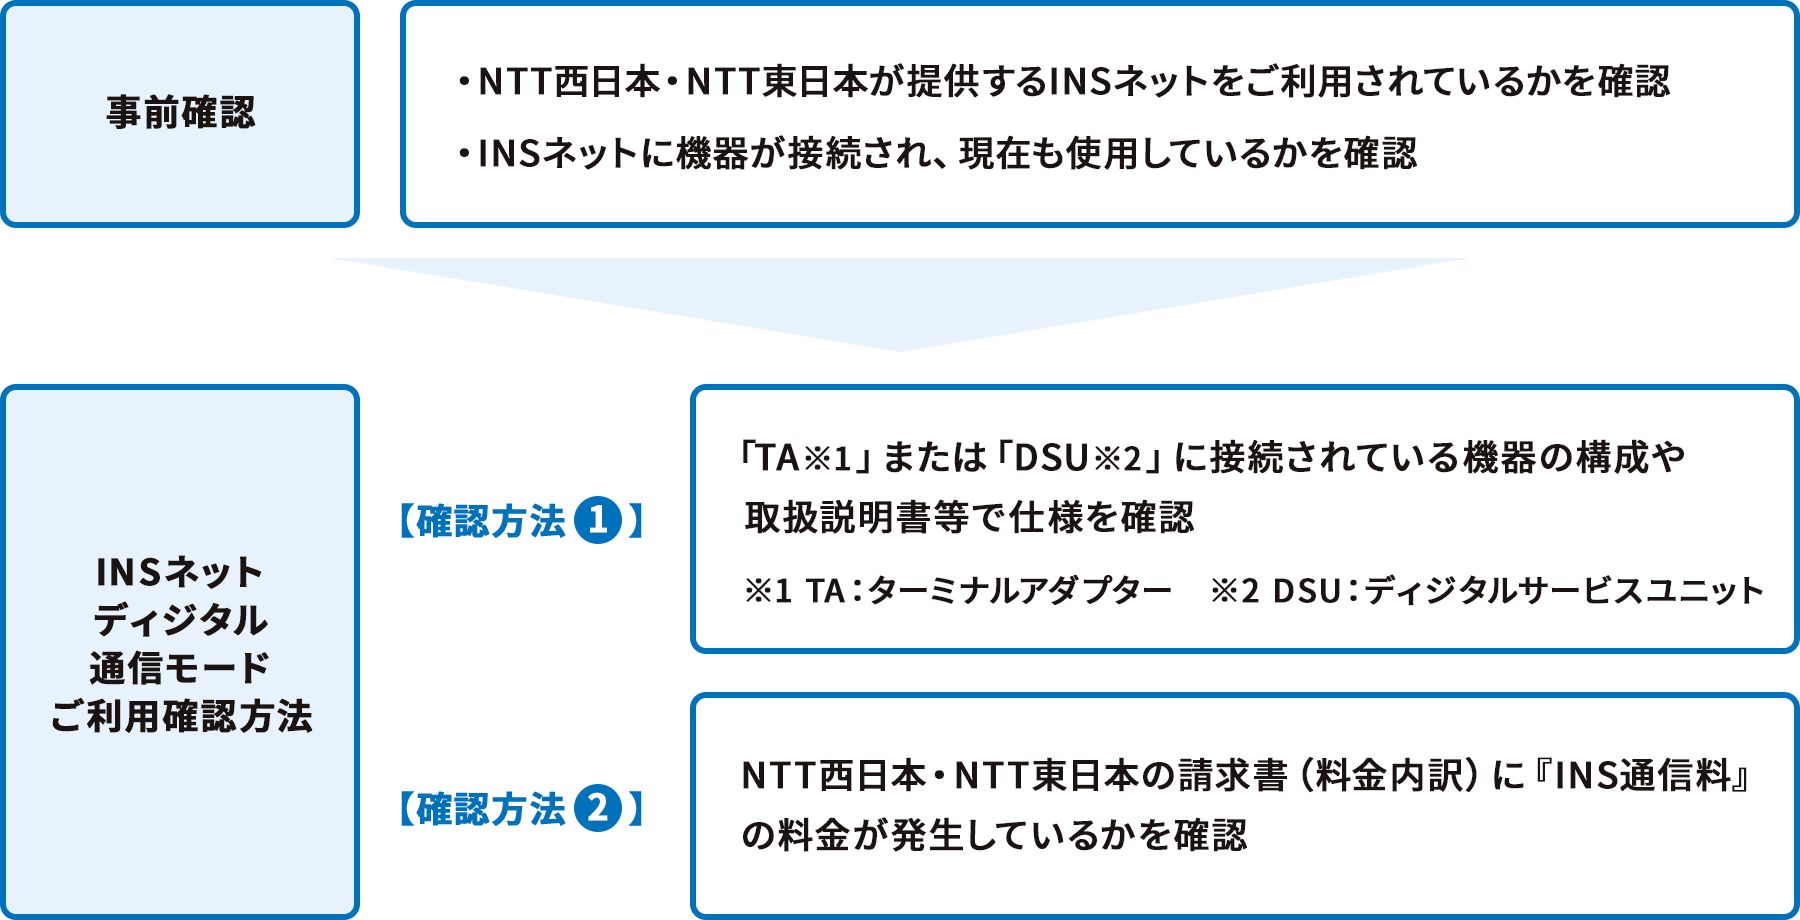 事前確認 ・NTT西日本・NTT東日本が提供するINSネットをご利用されているかを確認 ・INSネットに機器が接続され、現在も使用しているかを確認→INSネットディジタル通信モードご利用確認方法 【確認方法①】「TA※1」またはDSU※2」に接続されている機器の構成や取扱説明書等で仕様を確認 ※1 TA：ターミナルアダプター ※2 DSU：ディジタルサービスユニット 【確認方法②】NTT西日本・NTT東日本の請求書（料金内訳）に『INS通信量』の料金が発生しているかを確認